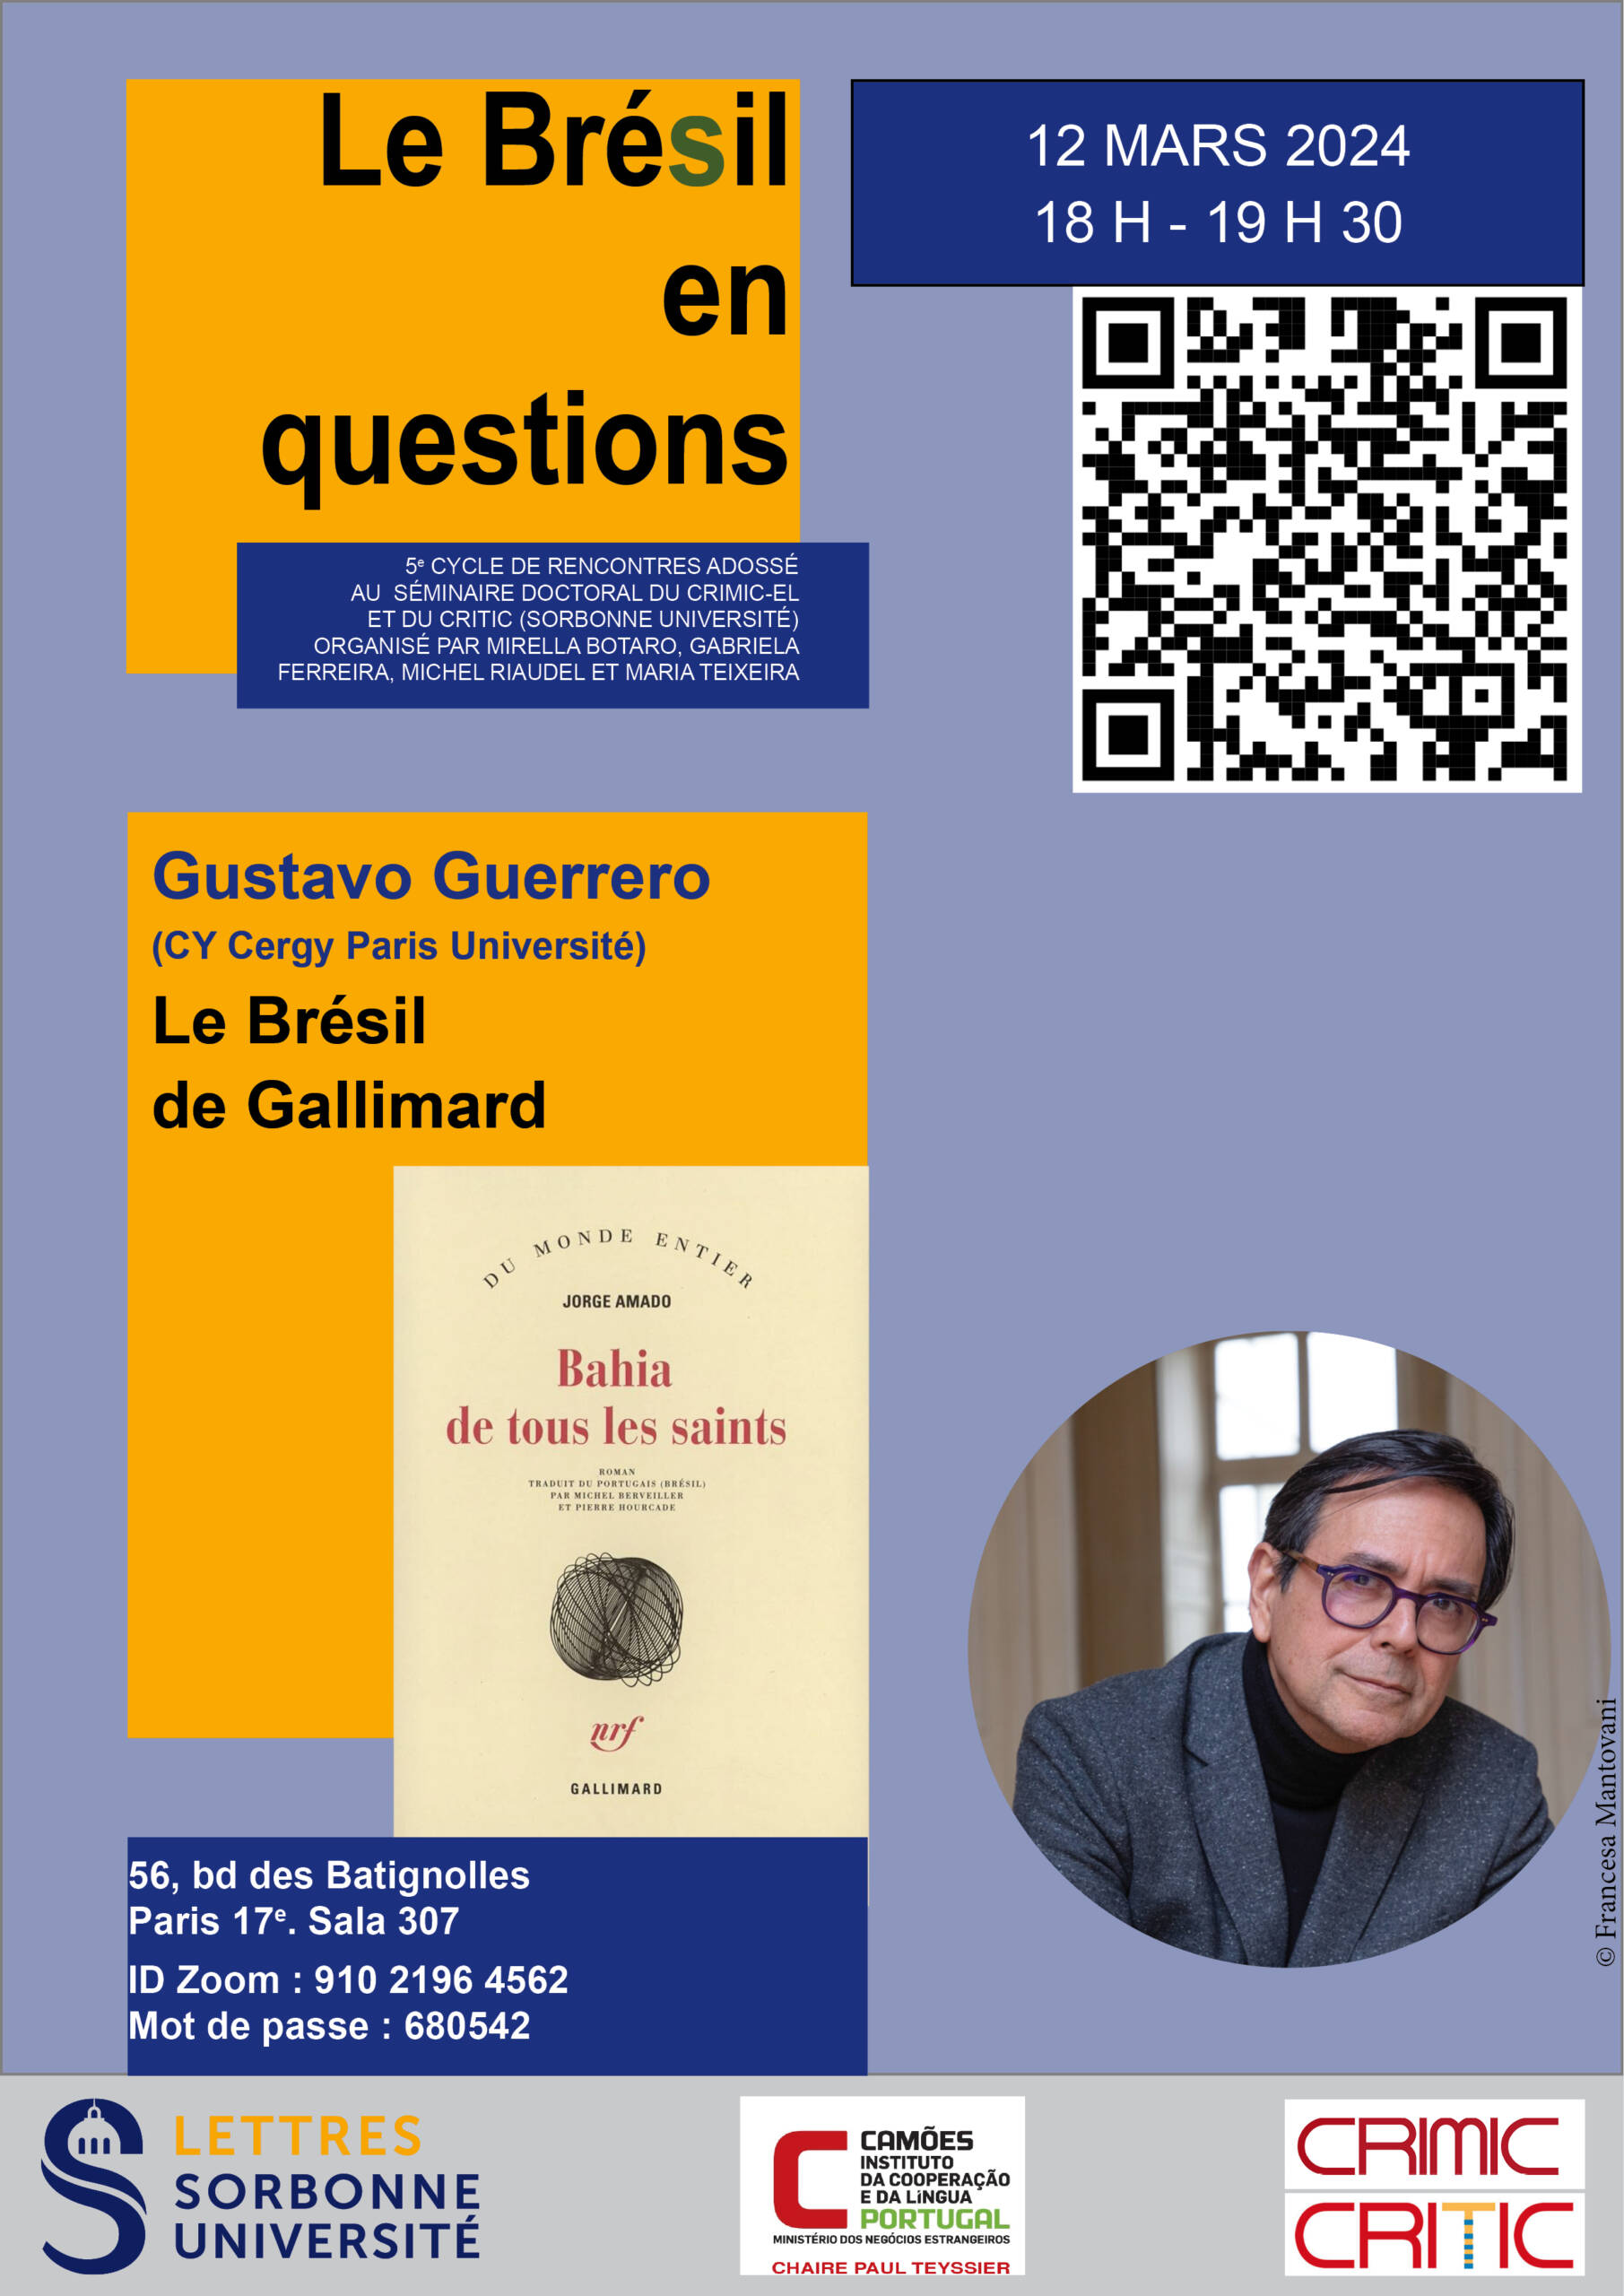 Le Brésil de Gallimard : rencontre avec Gustavo Guerrero (cycle “Le Brésil en Questions”)